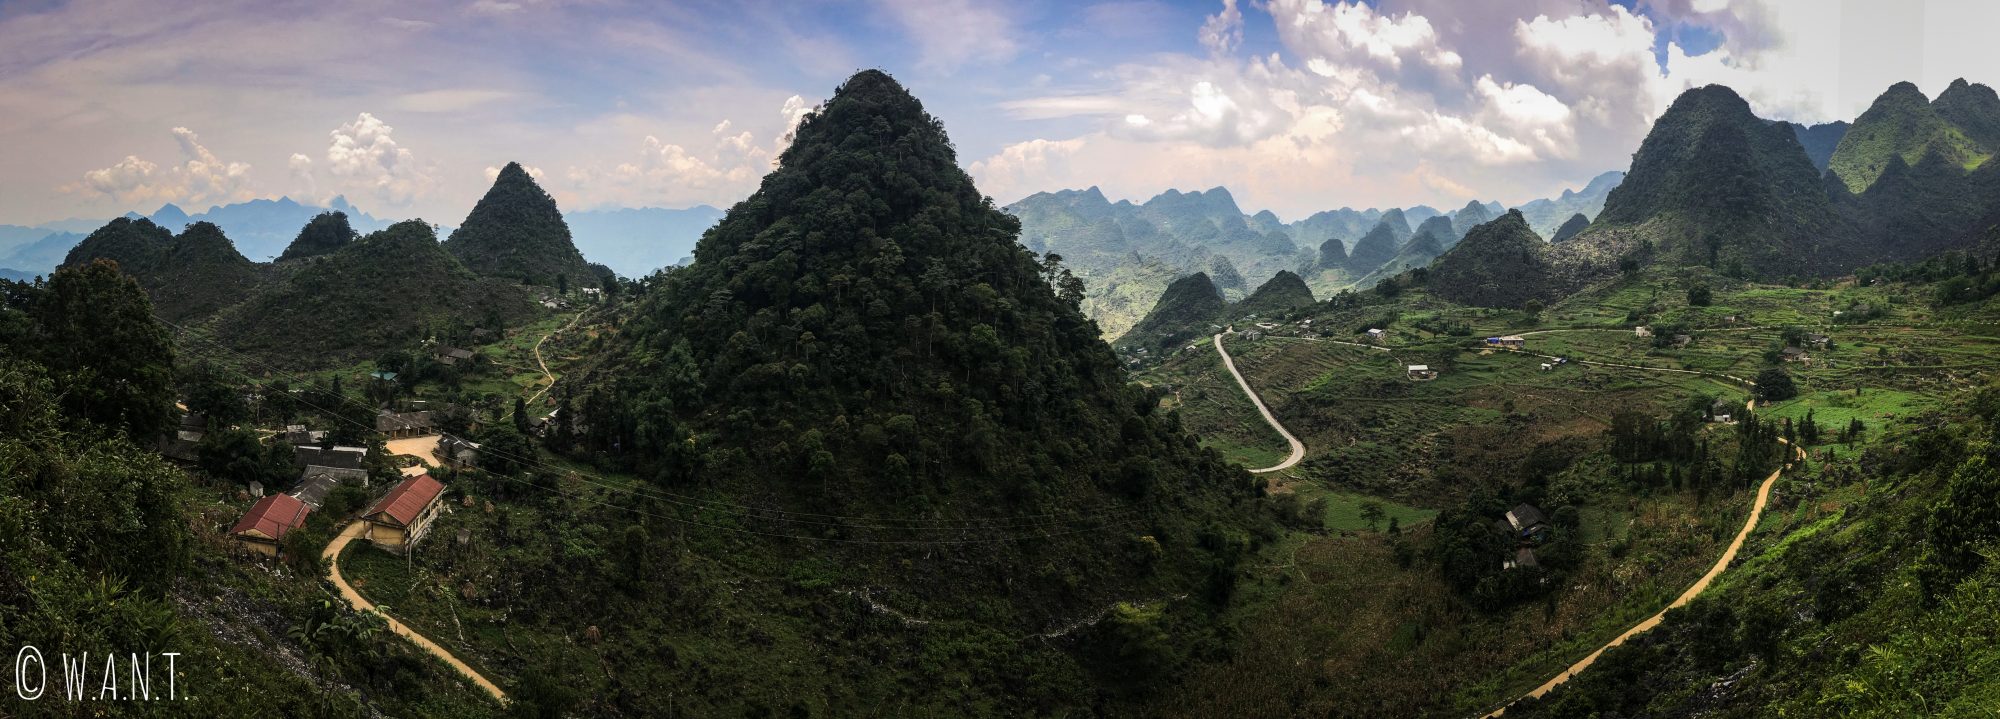 Panorama sur la route entre Meo Vac et Yen Minh